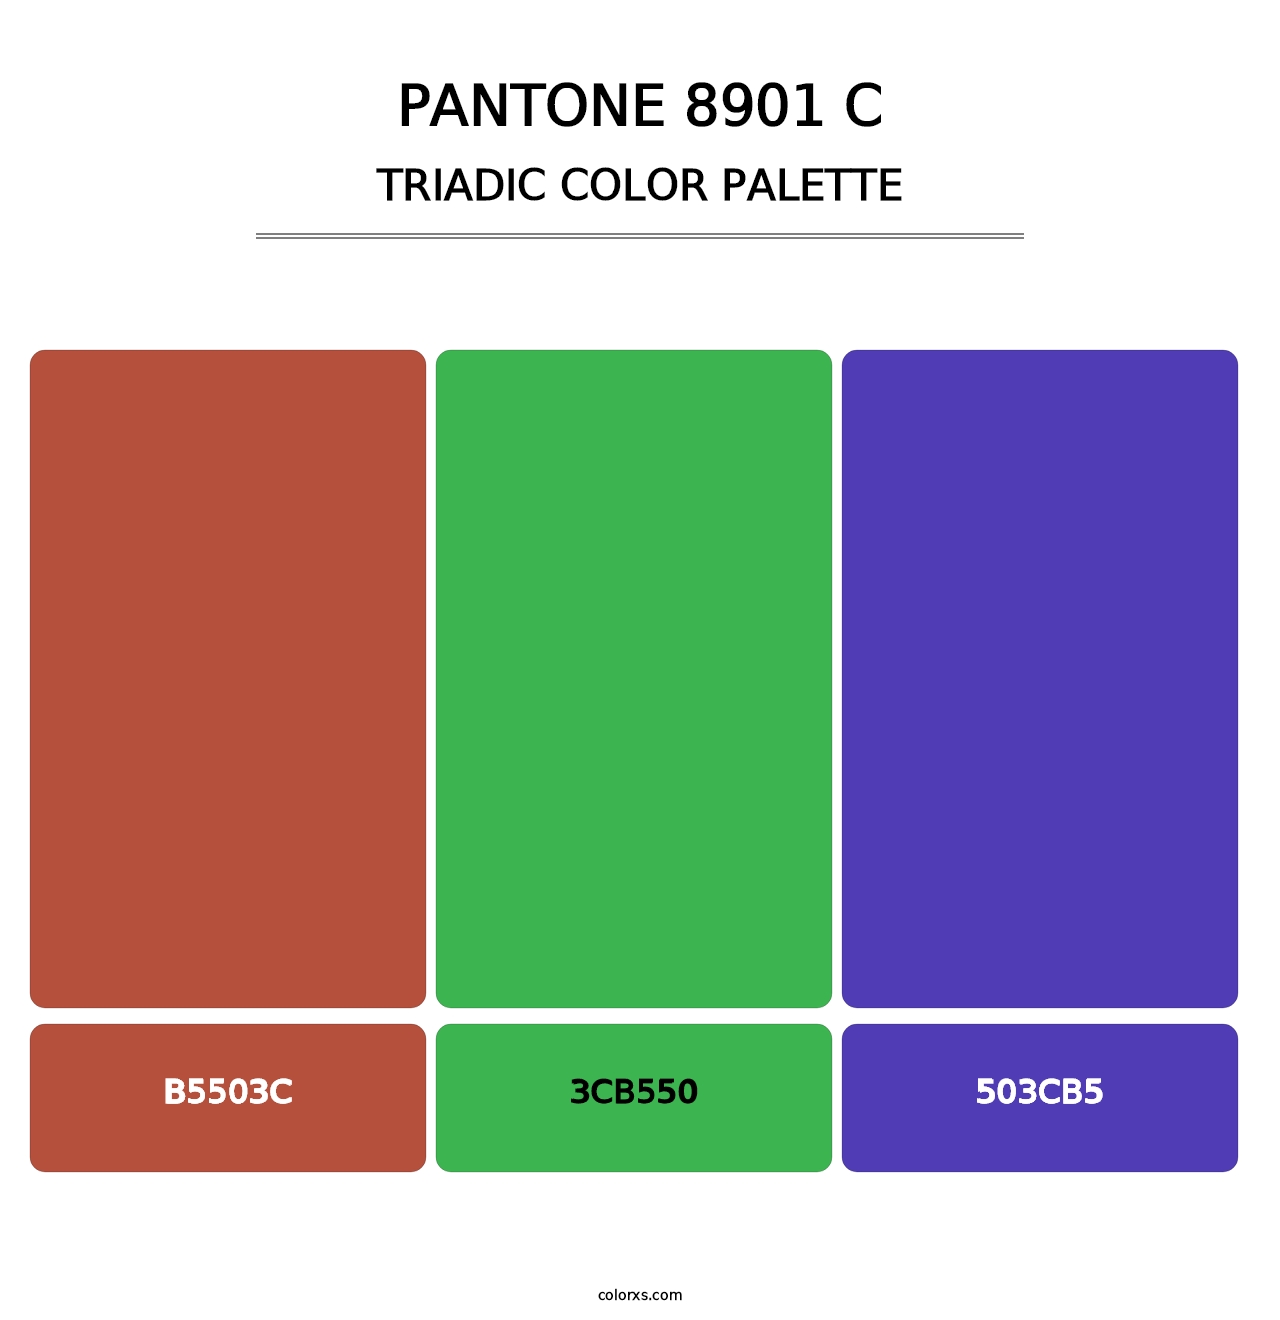 PANTONE 8901 C - Triadic Color Palette